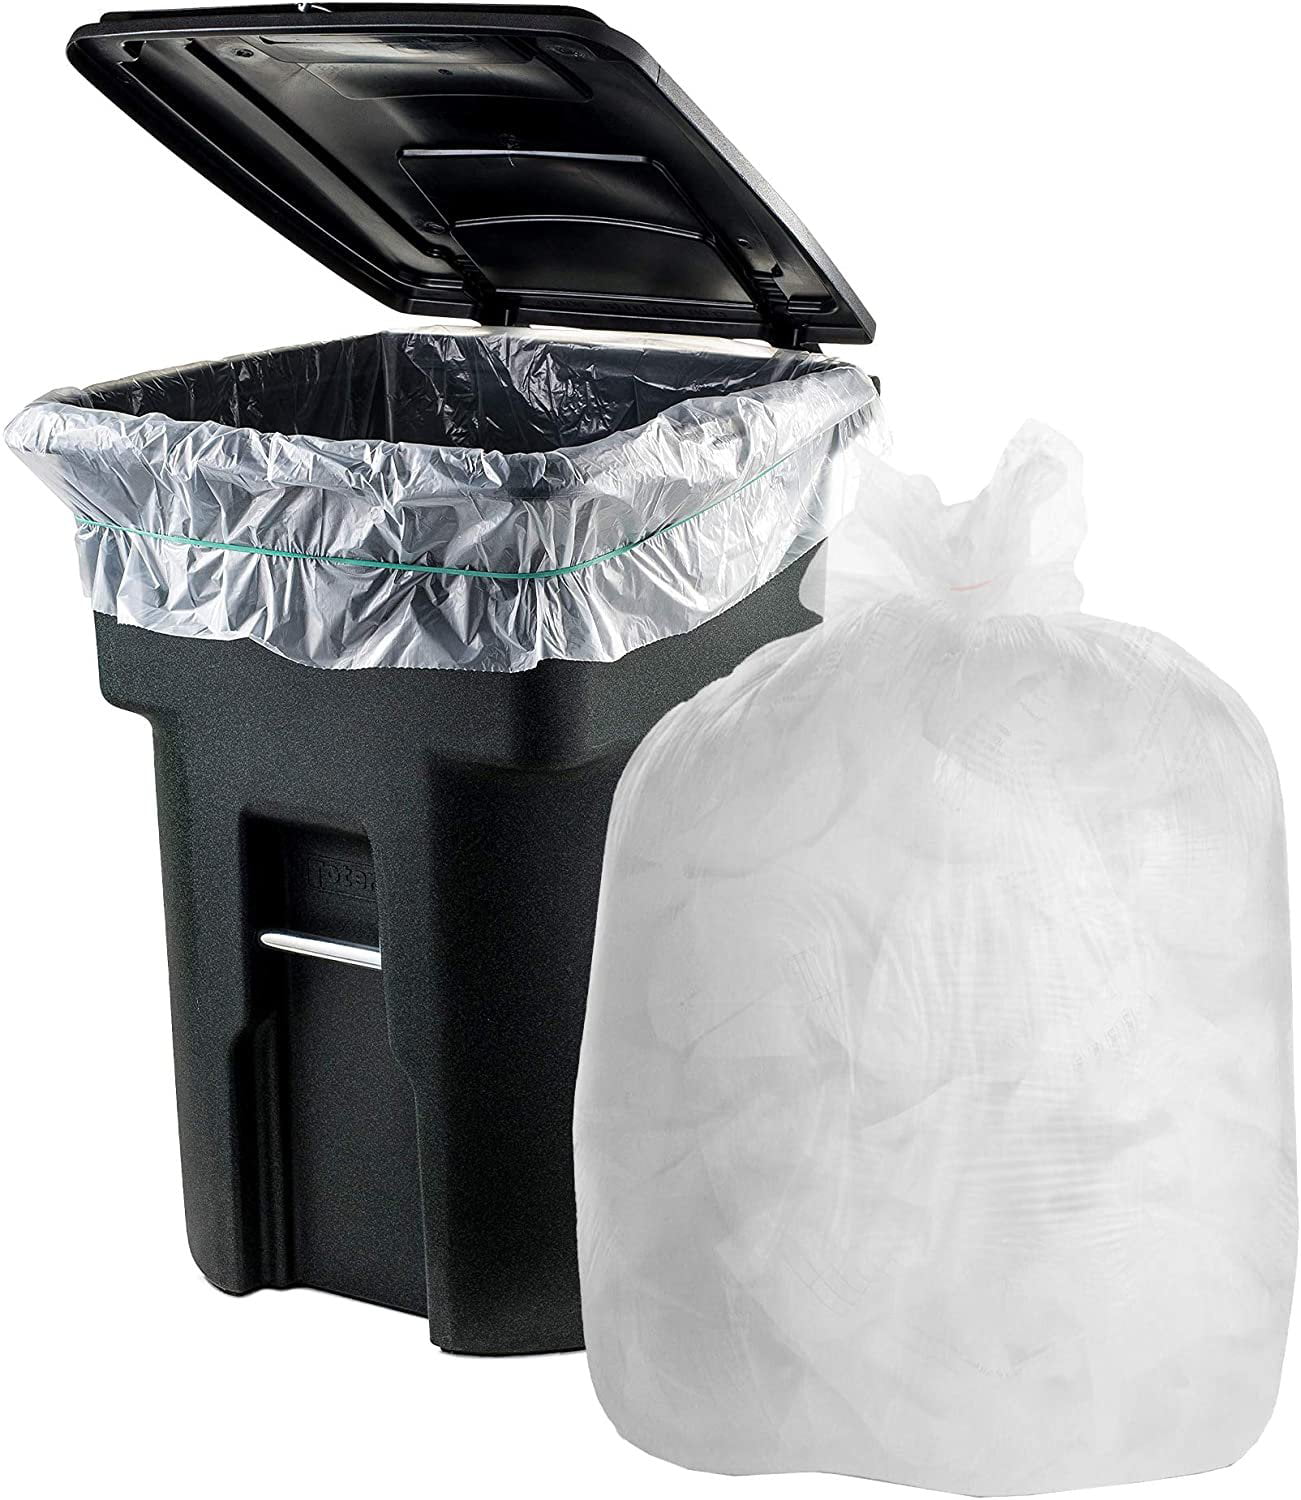 Thicken Drawstring Kitchen Trash Can Liner Bag Waste Disposal Garbage Bag 